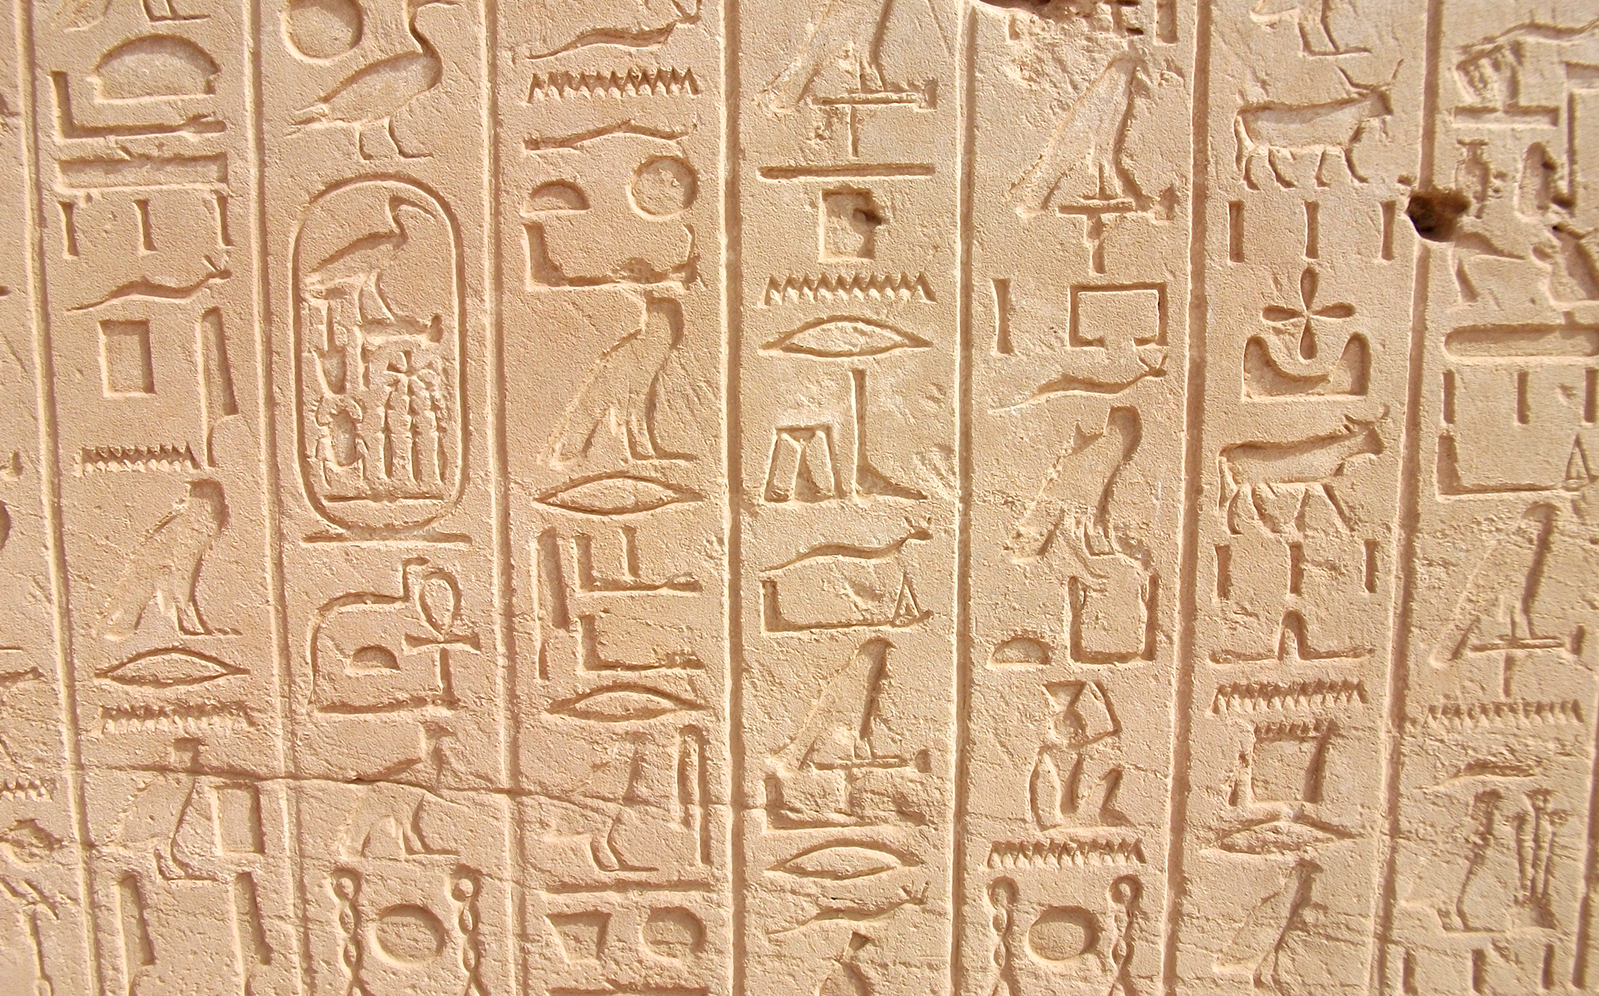 Beeldschrift oude Egyptenaren